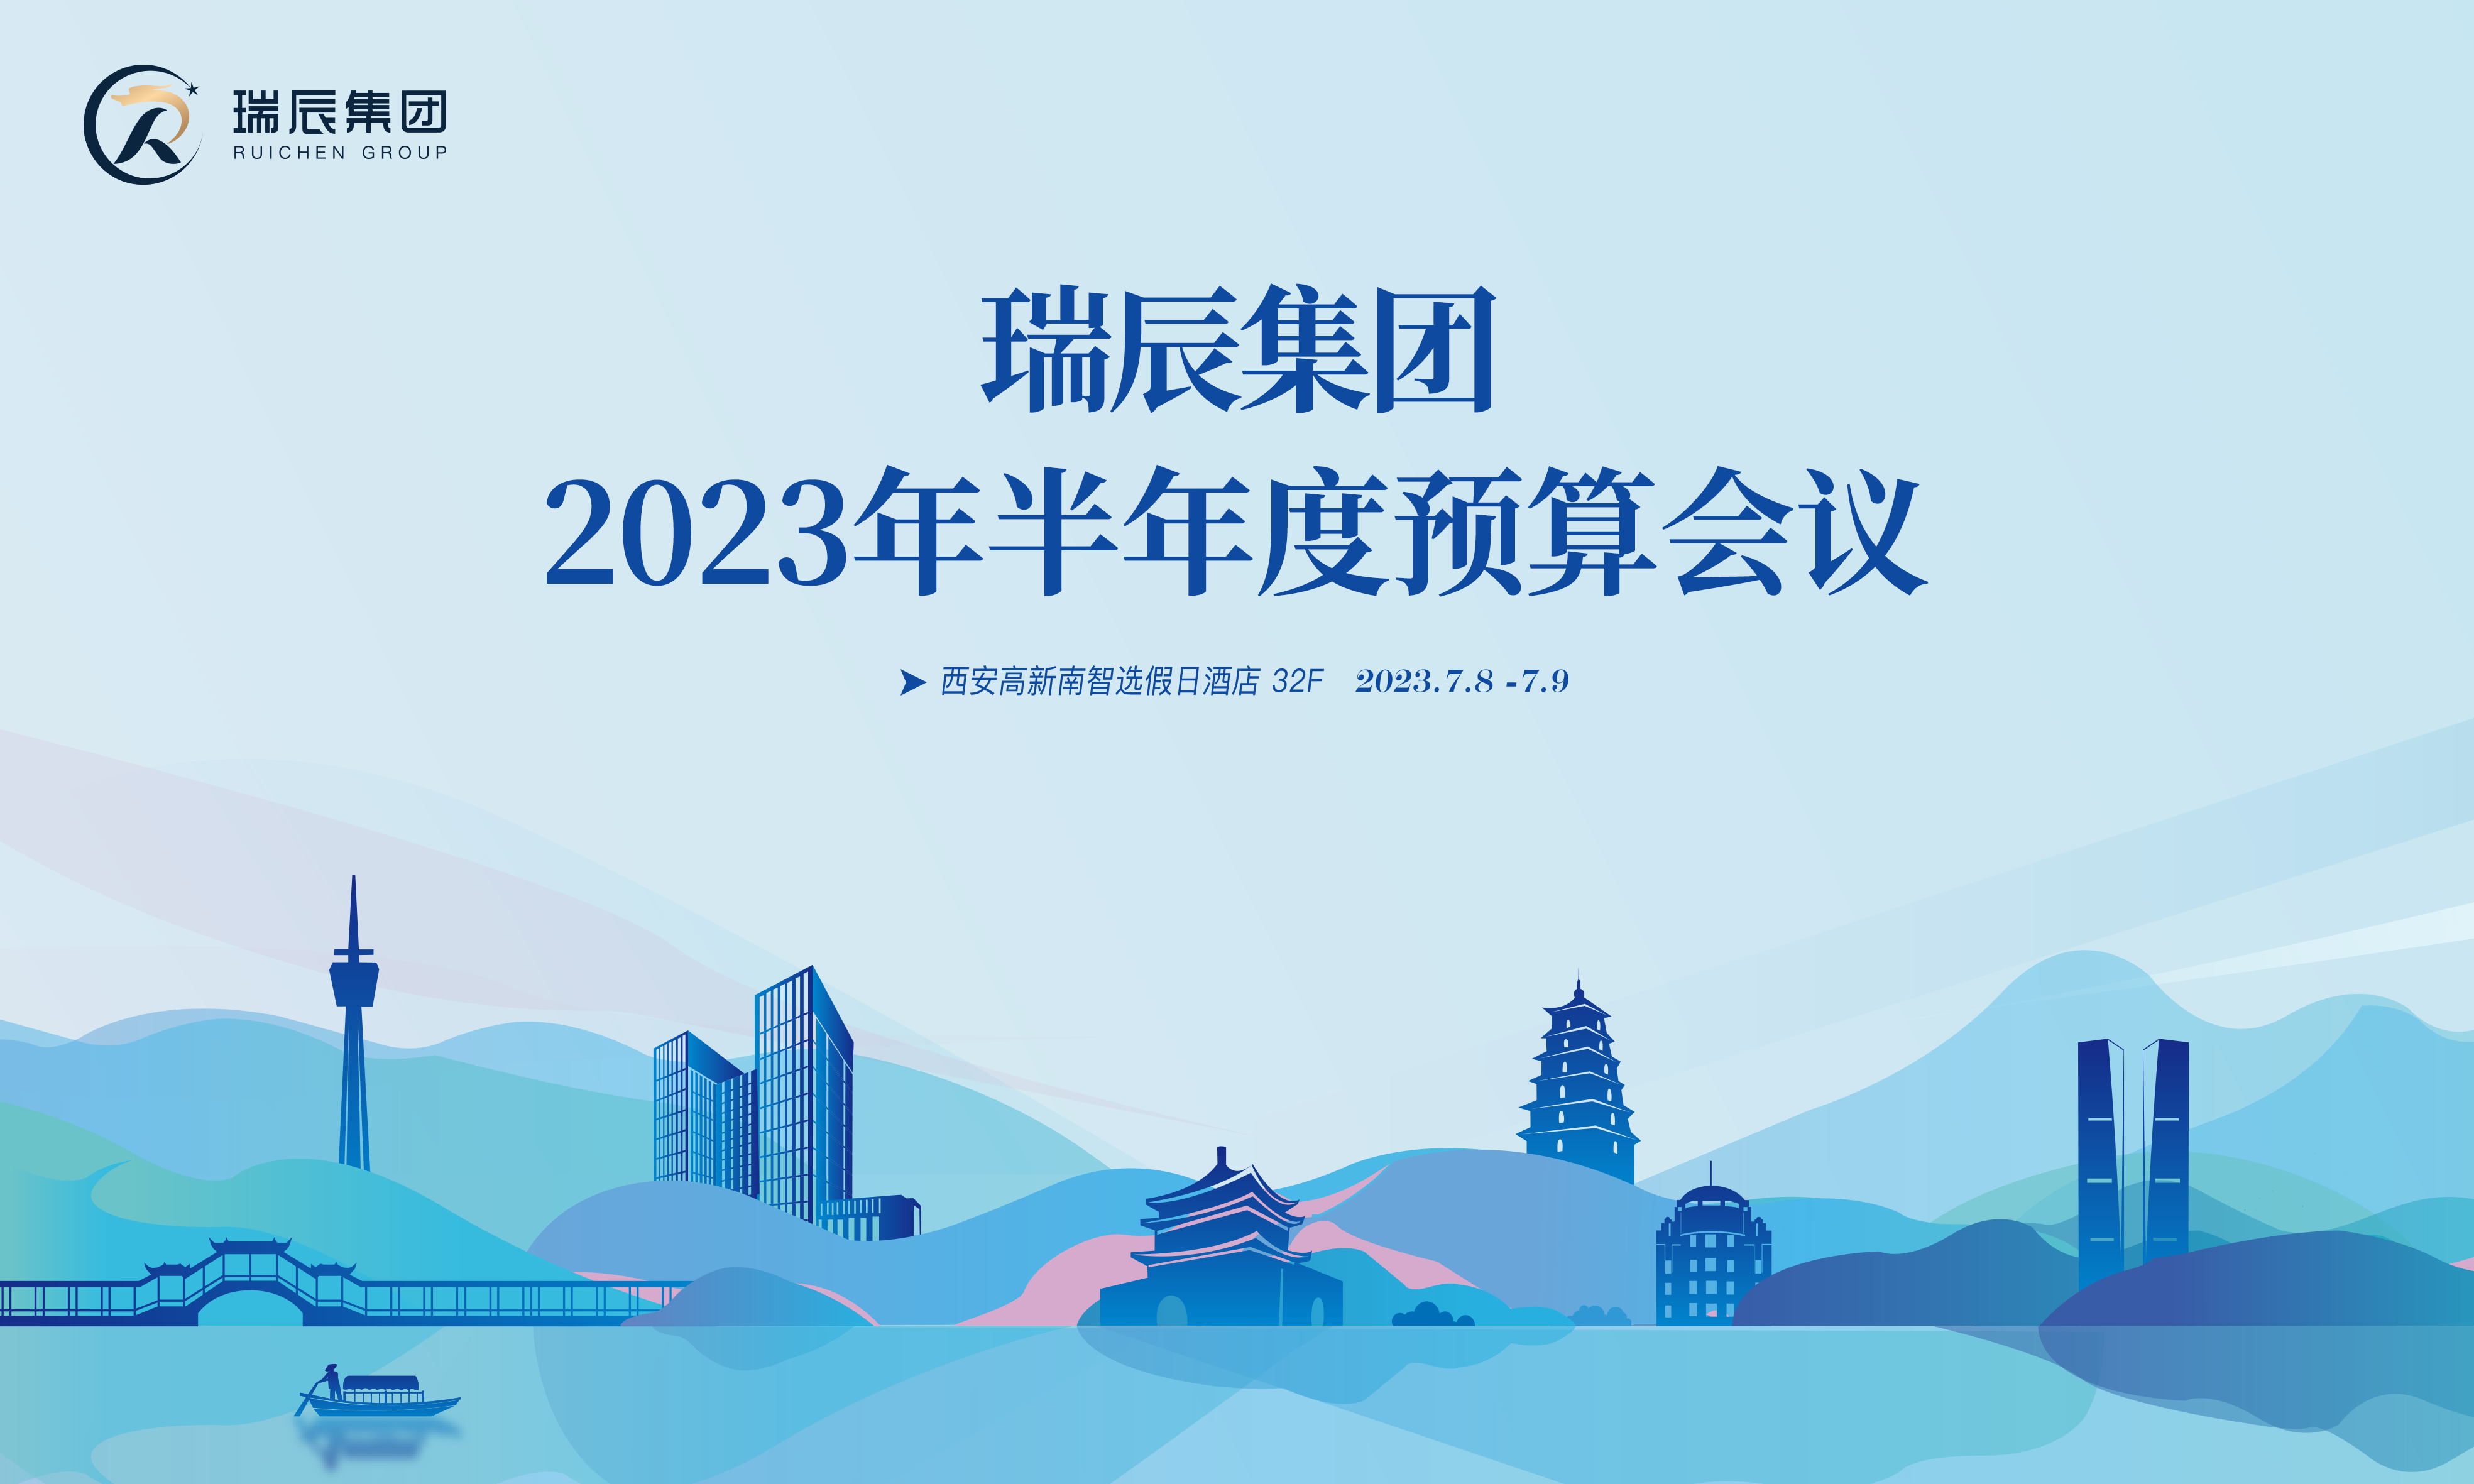 【简讯】祝贺瑞辰集团2023年半年度预算会议圆满召开